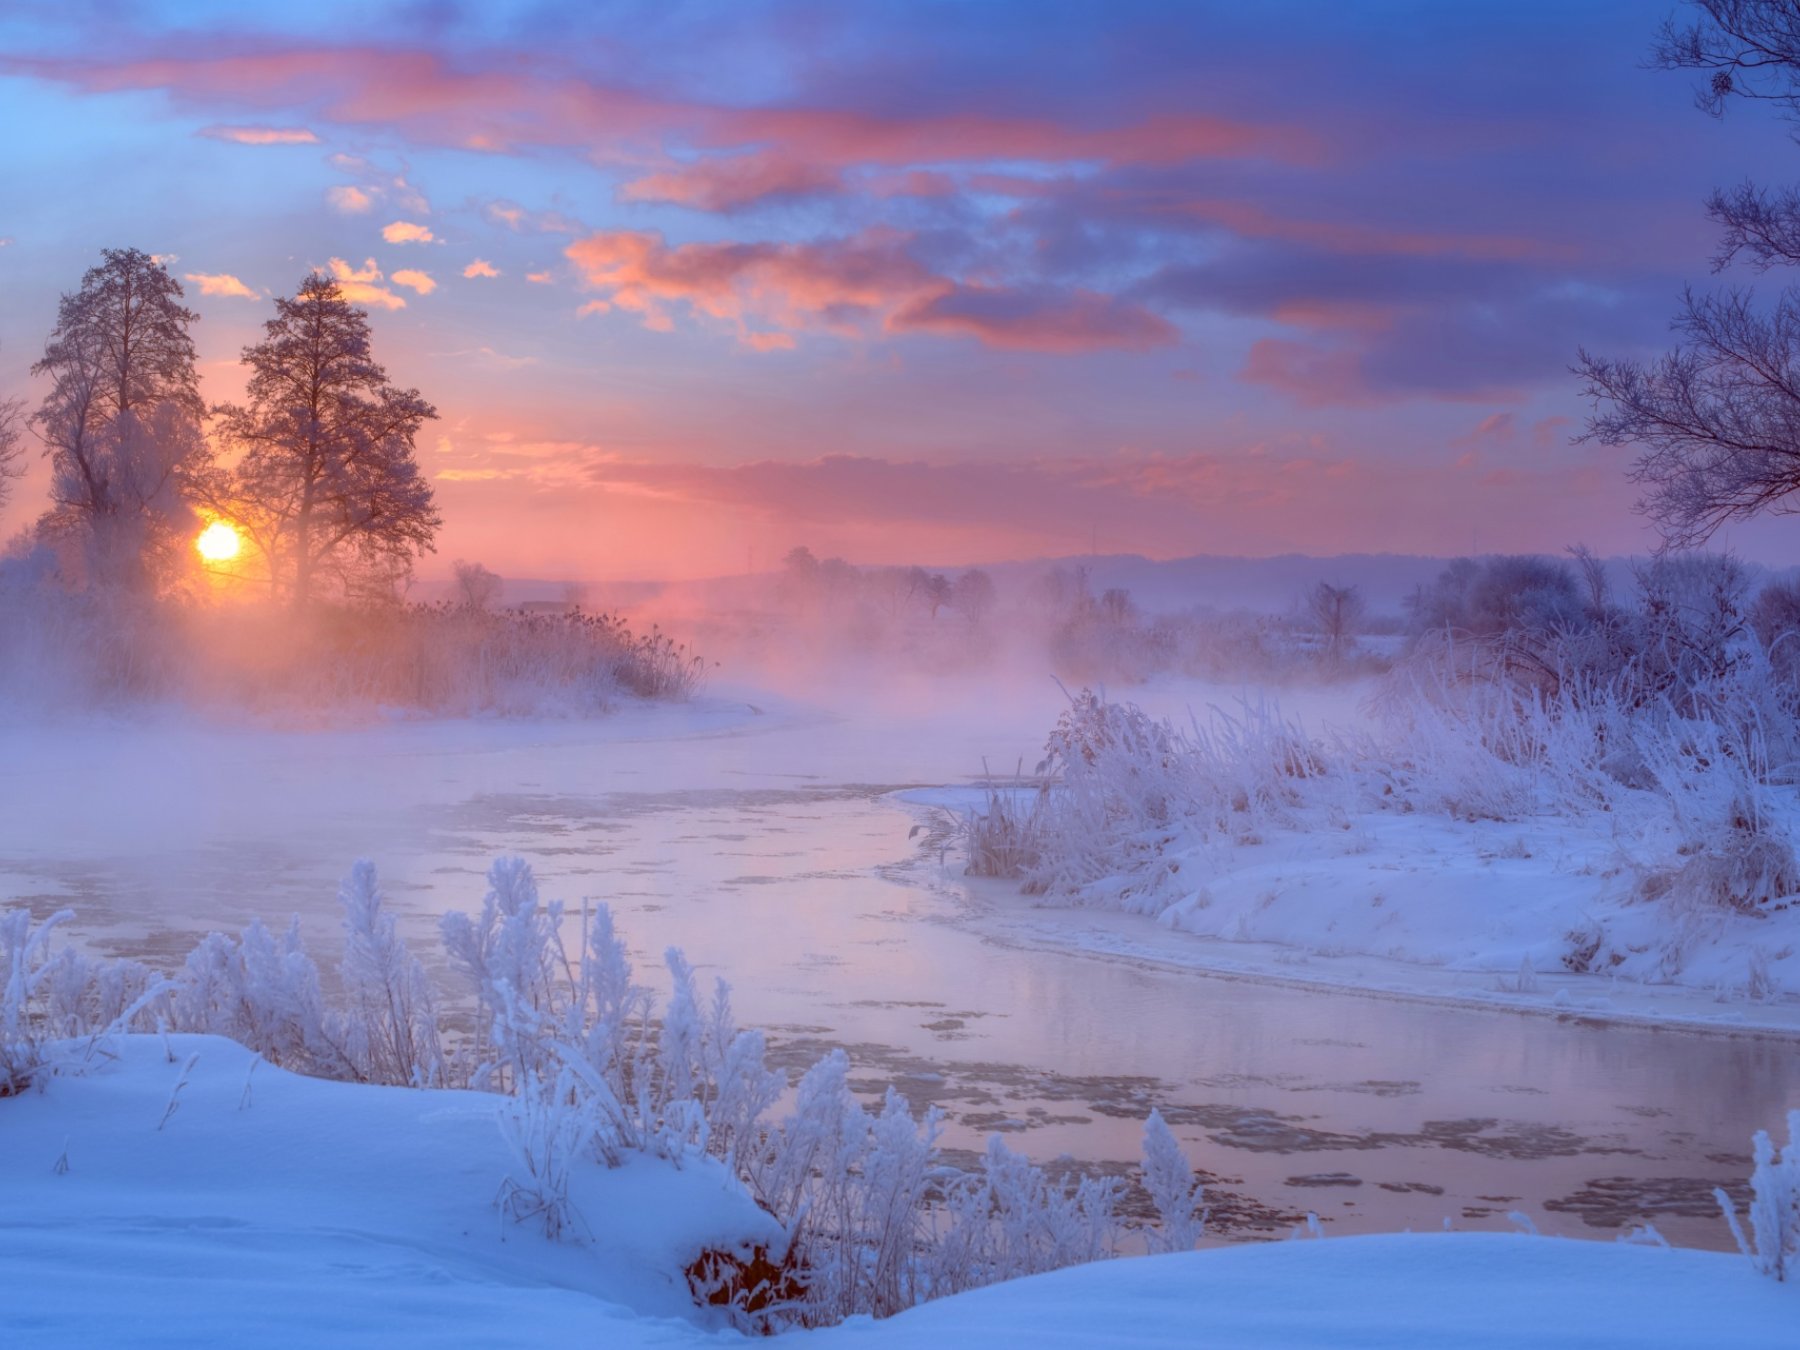 Ujęcie rzeki Gwdy w zimowej odsłonie wykonał Krzysztof Tollas. Za cały zestaw kapituła przyznała autorowi pierwsze miejsce w kategorii „Atrakcje”.